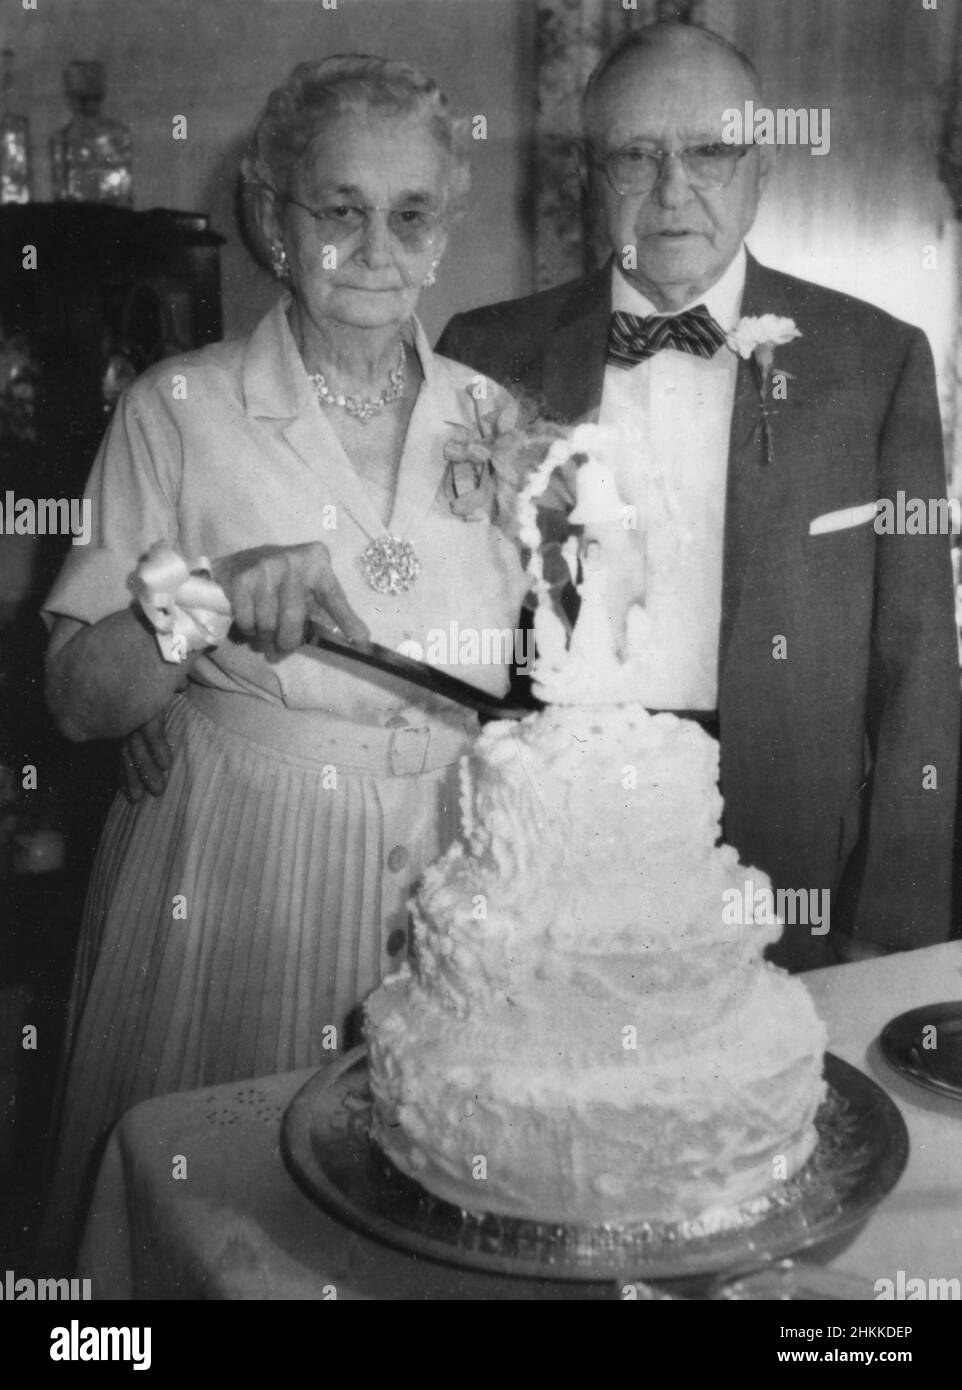 Ein Seniorenpaar scheint unemotional zu sein, wenn es darum geht, ihren Golden Anniversary Kuchen zu schneiden, Ca. 1958. Stockfoto